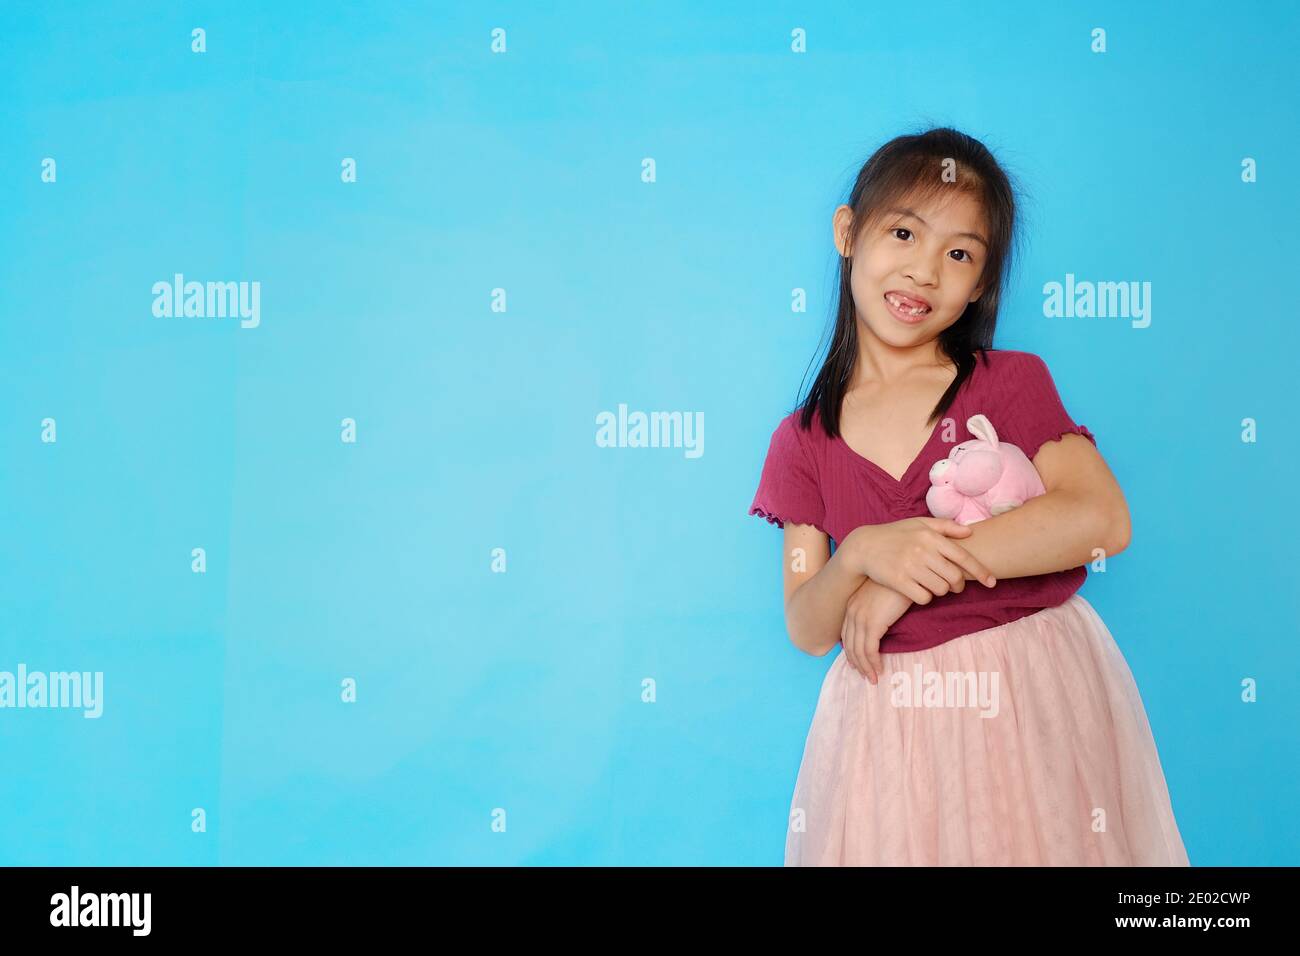 Une photo de gros plan d'une jolie fille asiatique, regardant directement l'appareil photo, souriant, bertant sa poupée de porc rose avec fond bleu clair Uni. Banque D'Images